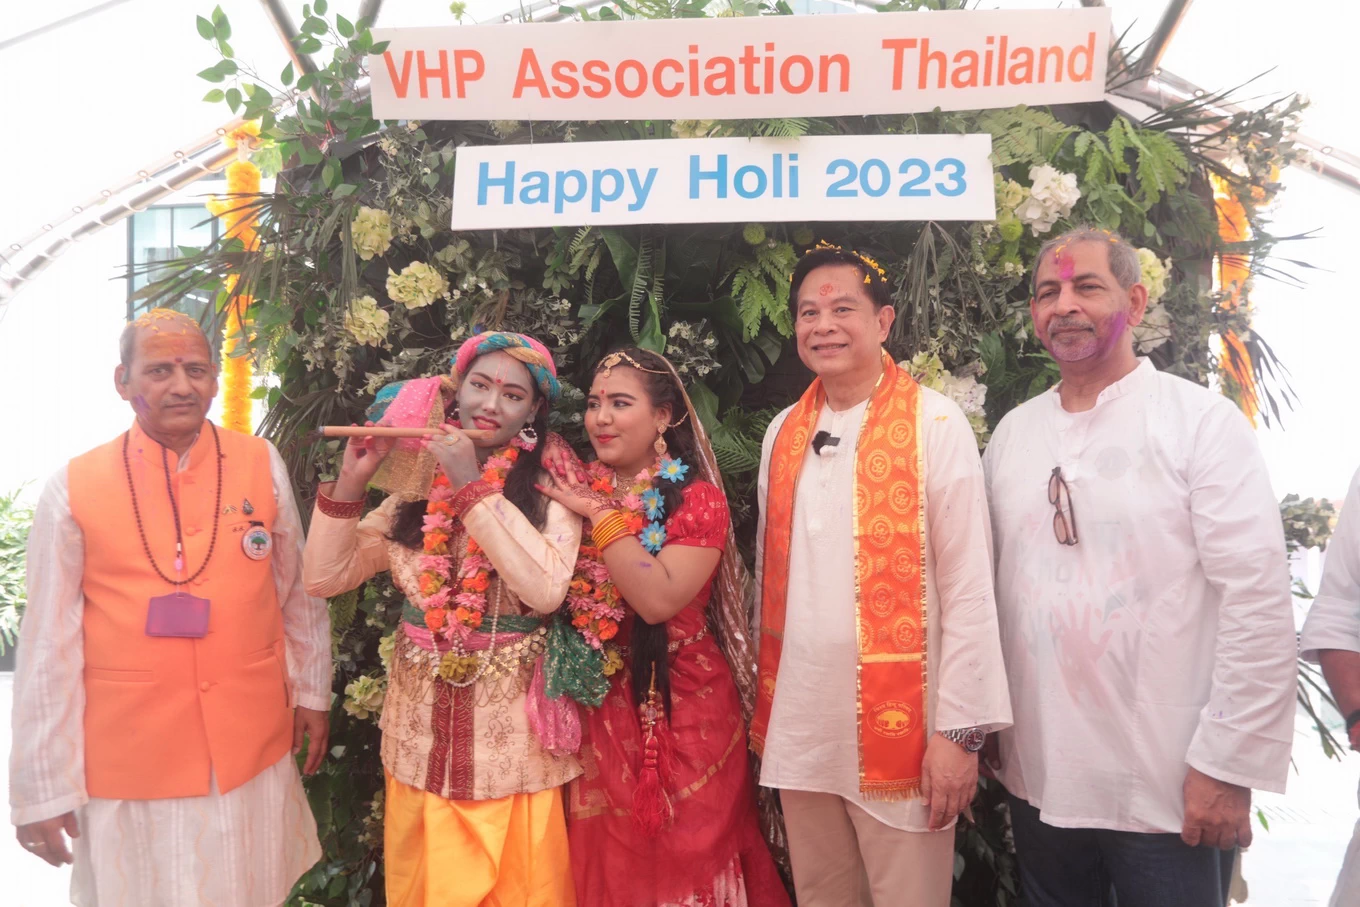 “พีระพันธุ์” ร่วมงาน เทศกาลสาดสี โฮลี เฟสติวัล เชื่อมความสัมพันธ์ไทย-อินเดีย